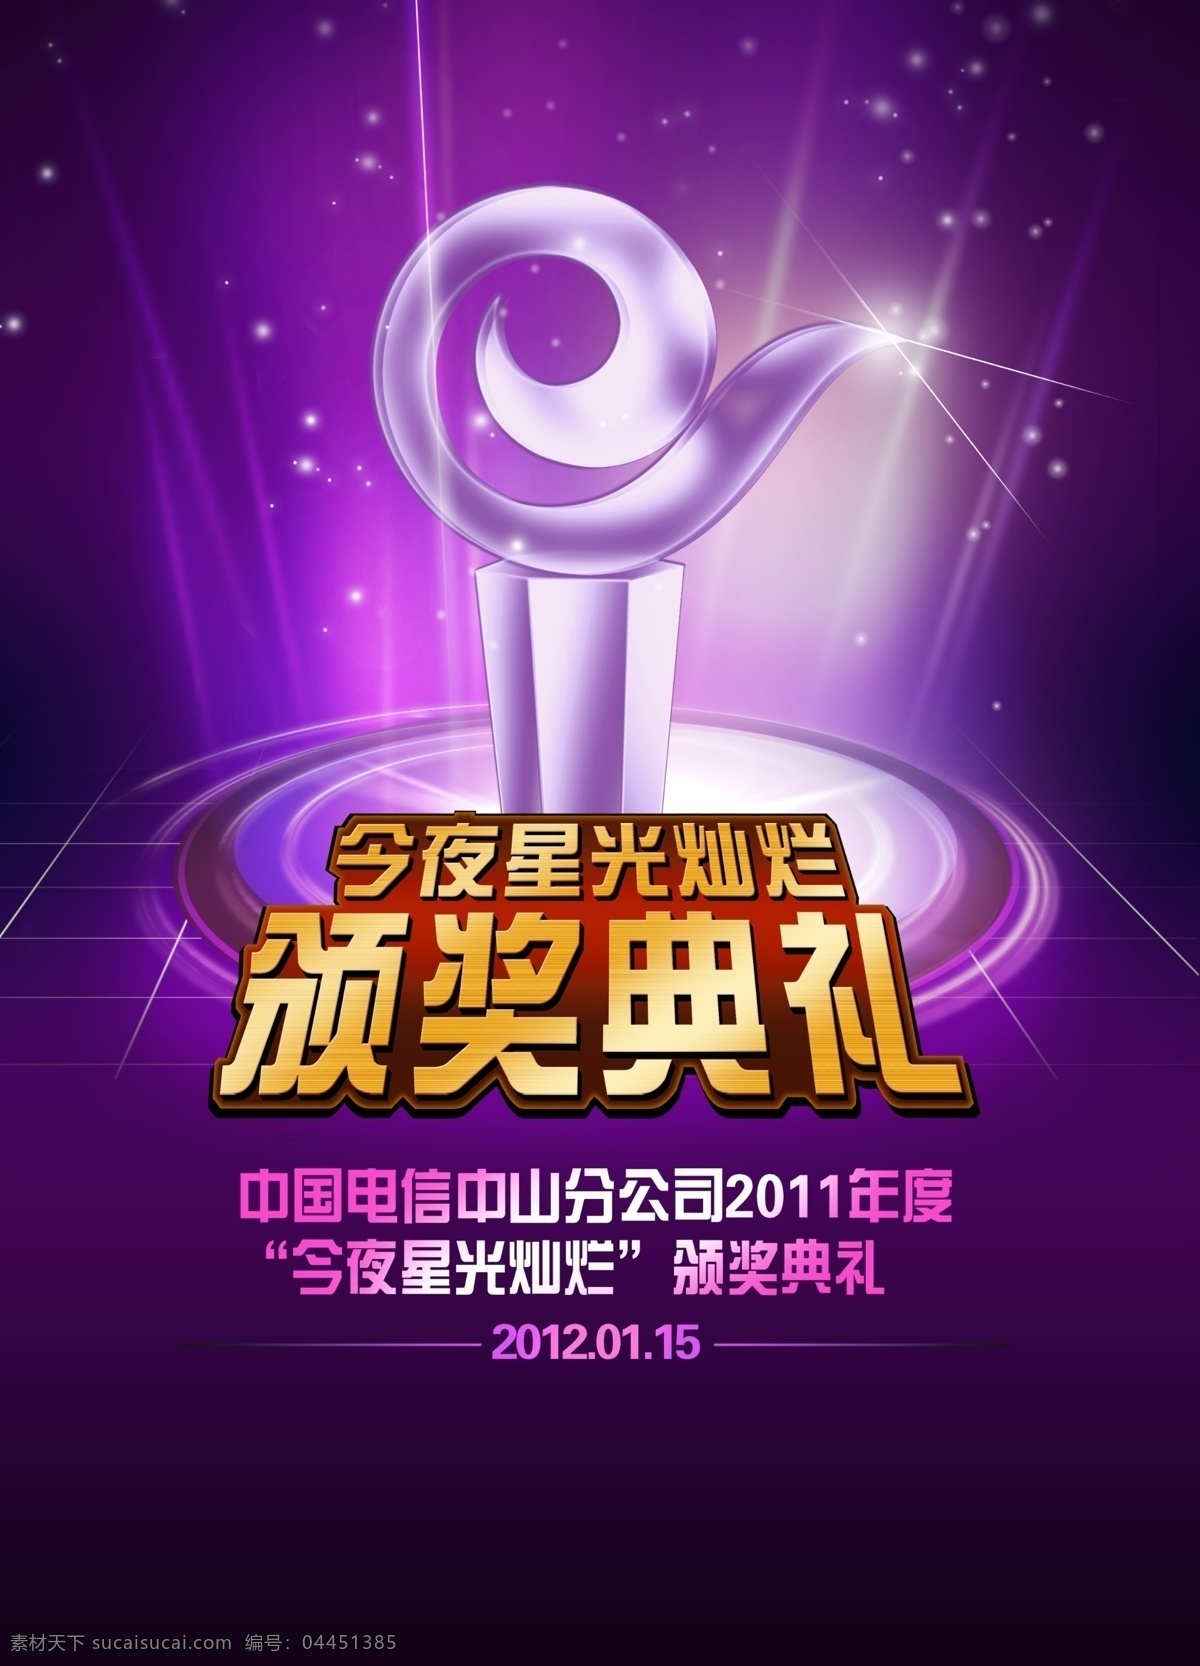 颁奖典礼 中国电信 广告设计模板 源文件 奖杯 黑色